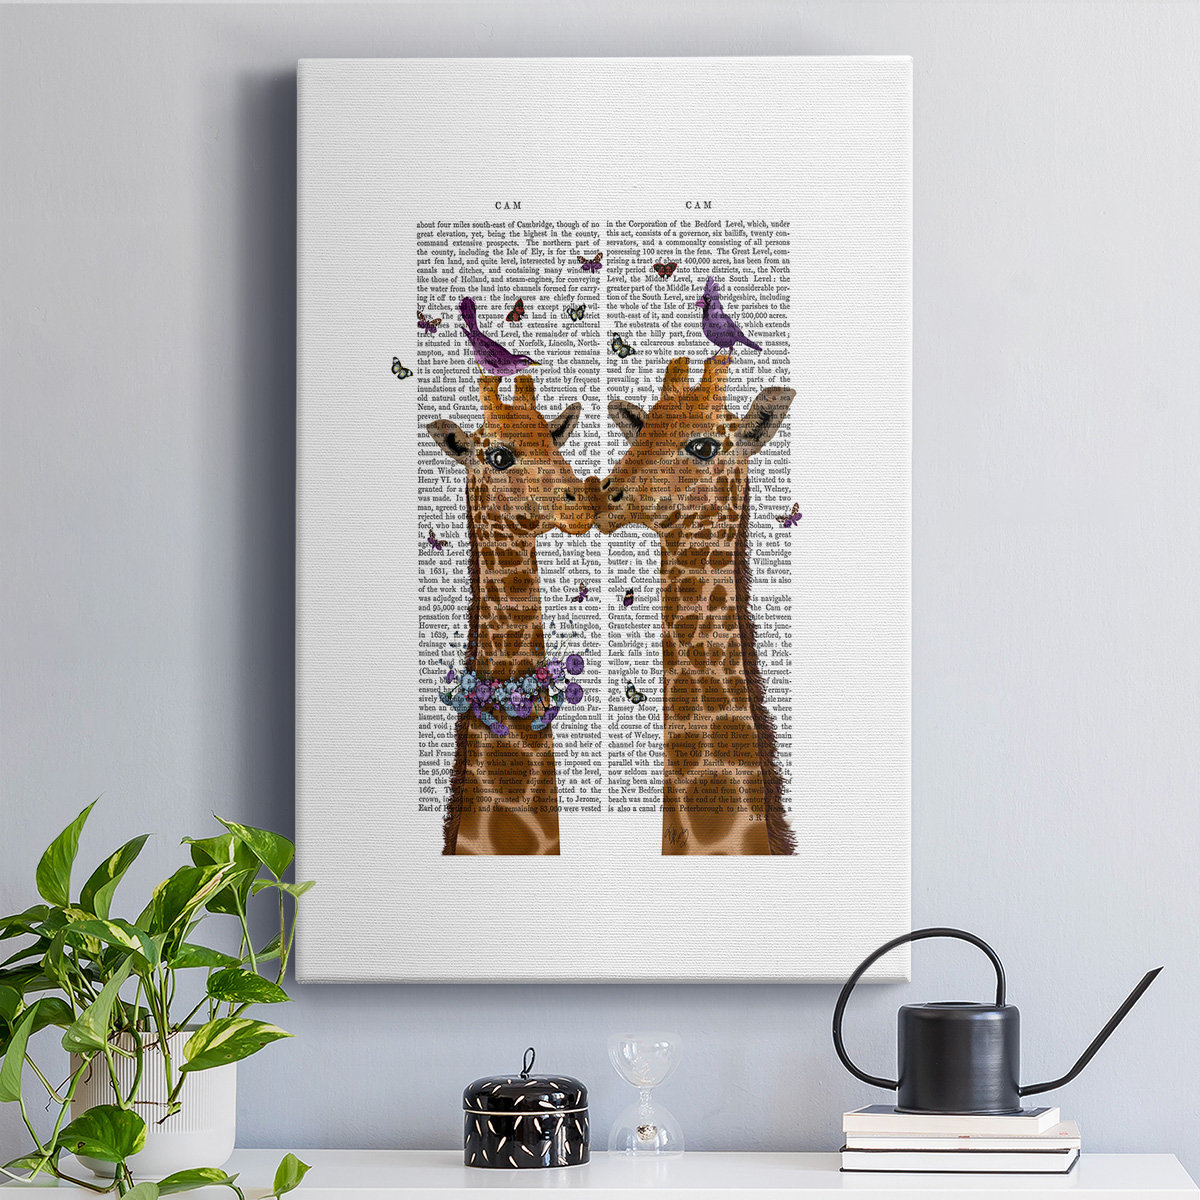 giraffes kissing